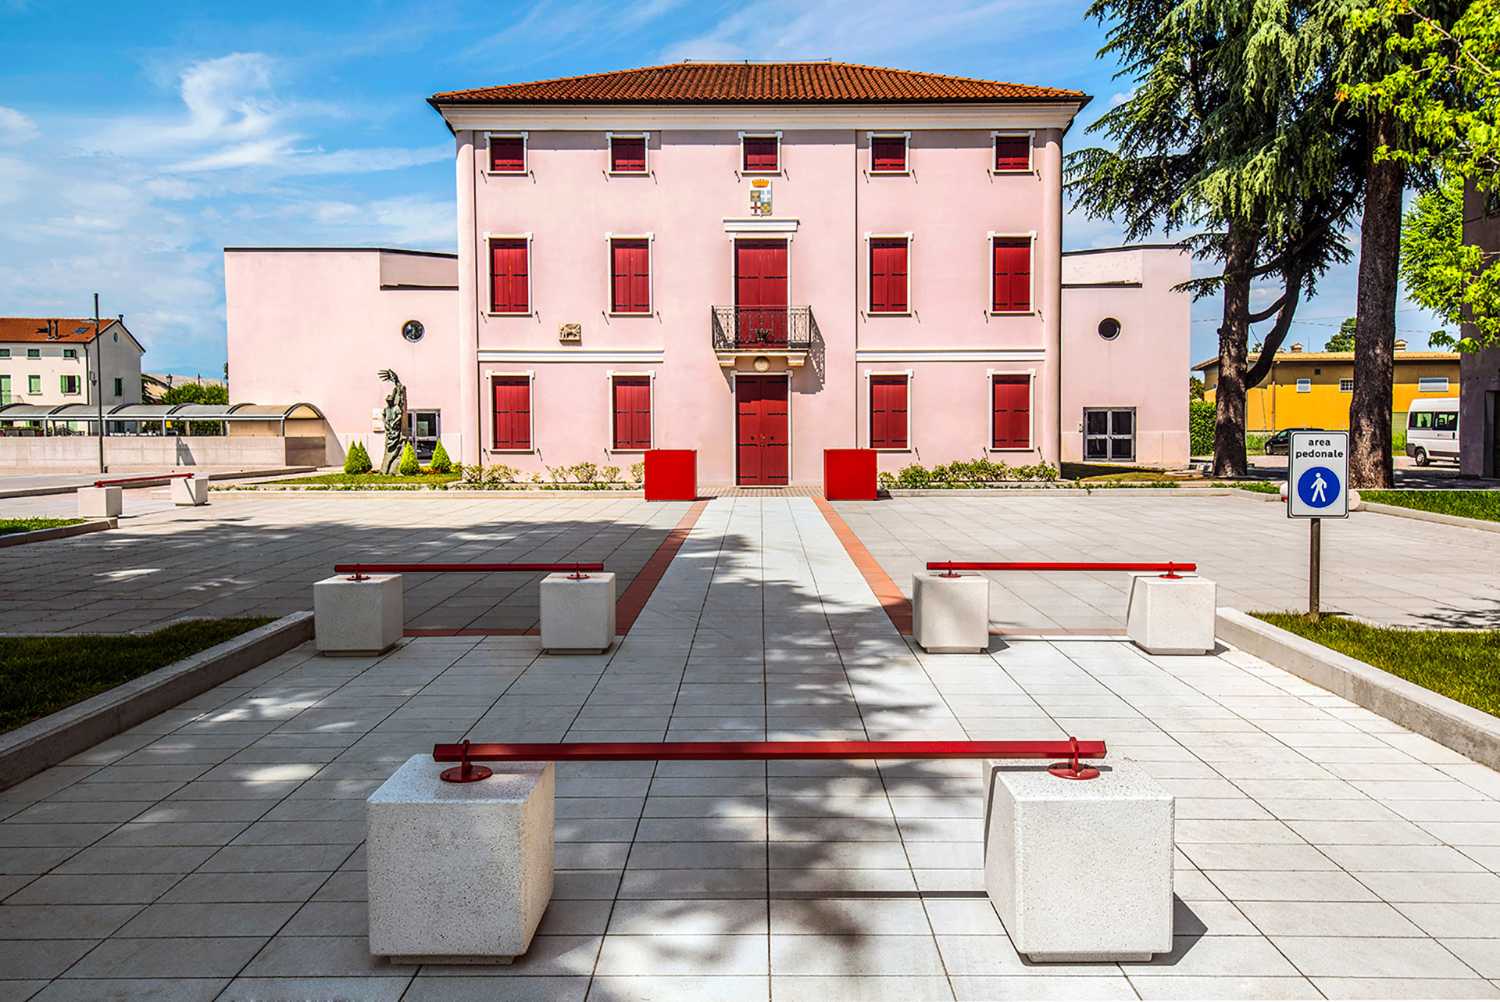 Riqualificazione della piazza municipale a Villa del Conte. La pavimentazione protagonista